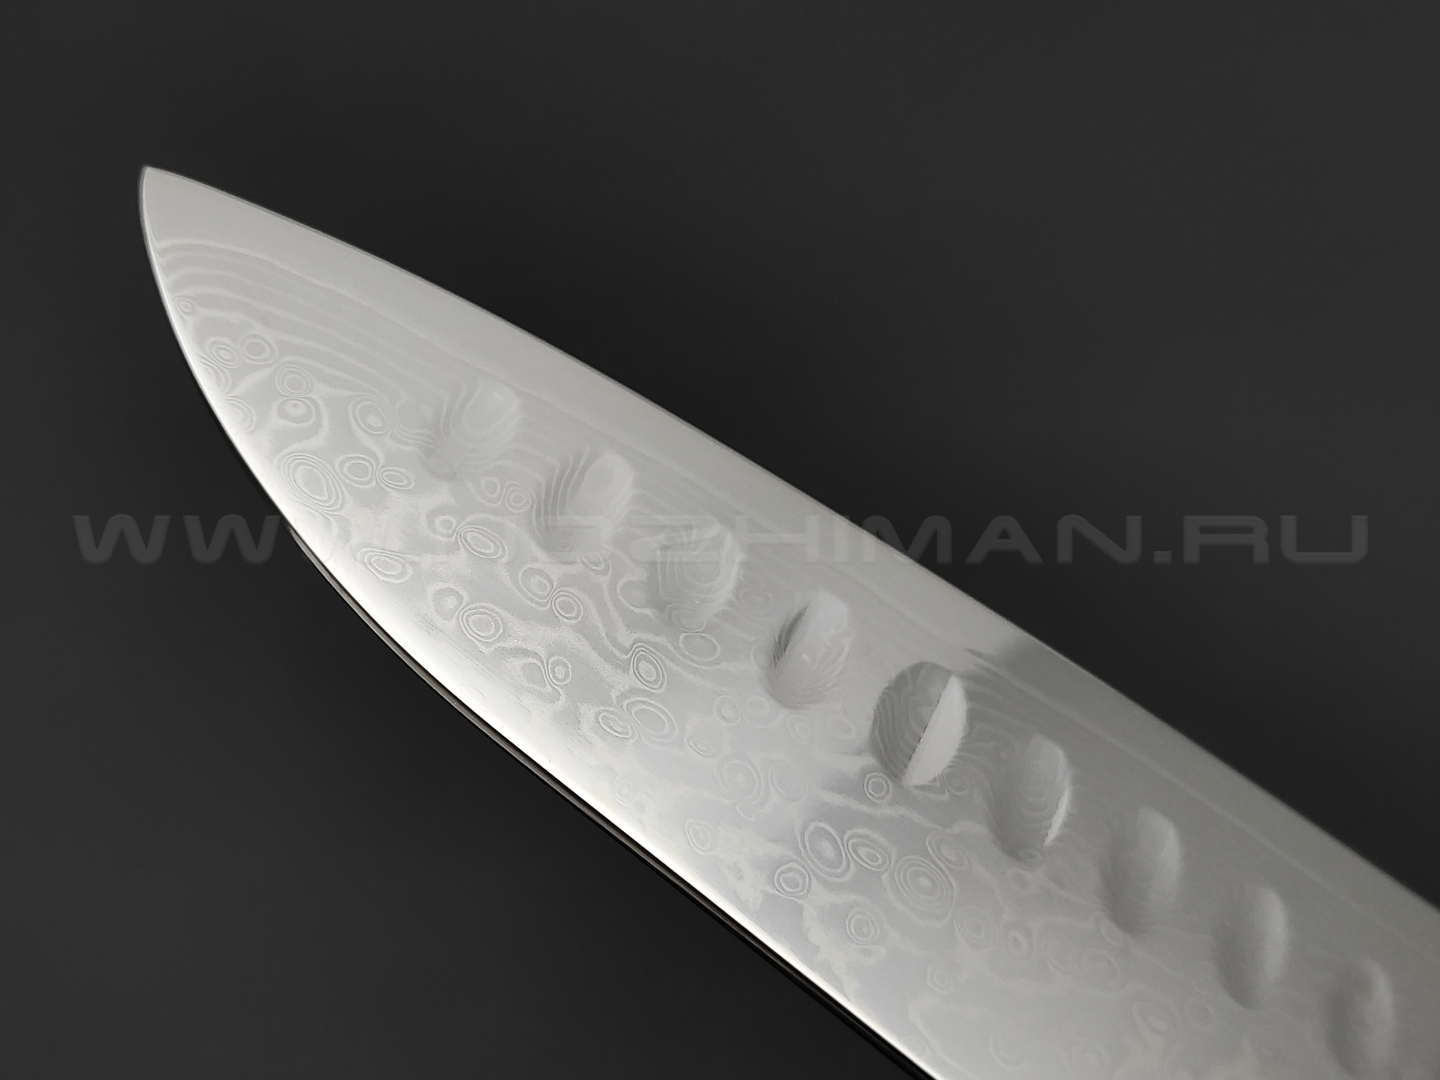 TuoTown нож Santoku TX-D6 дамасская сталь VG10, рукоять G10 black